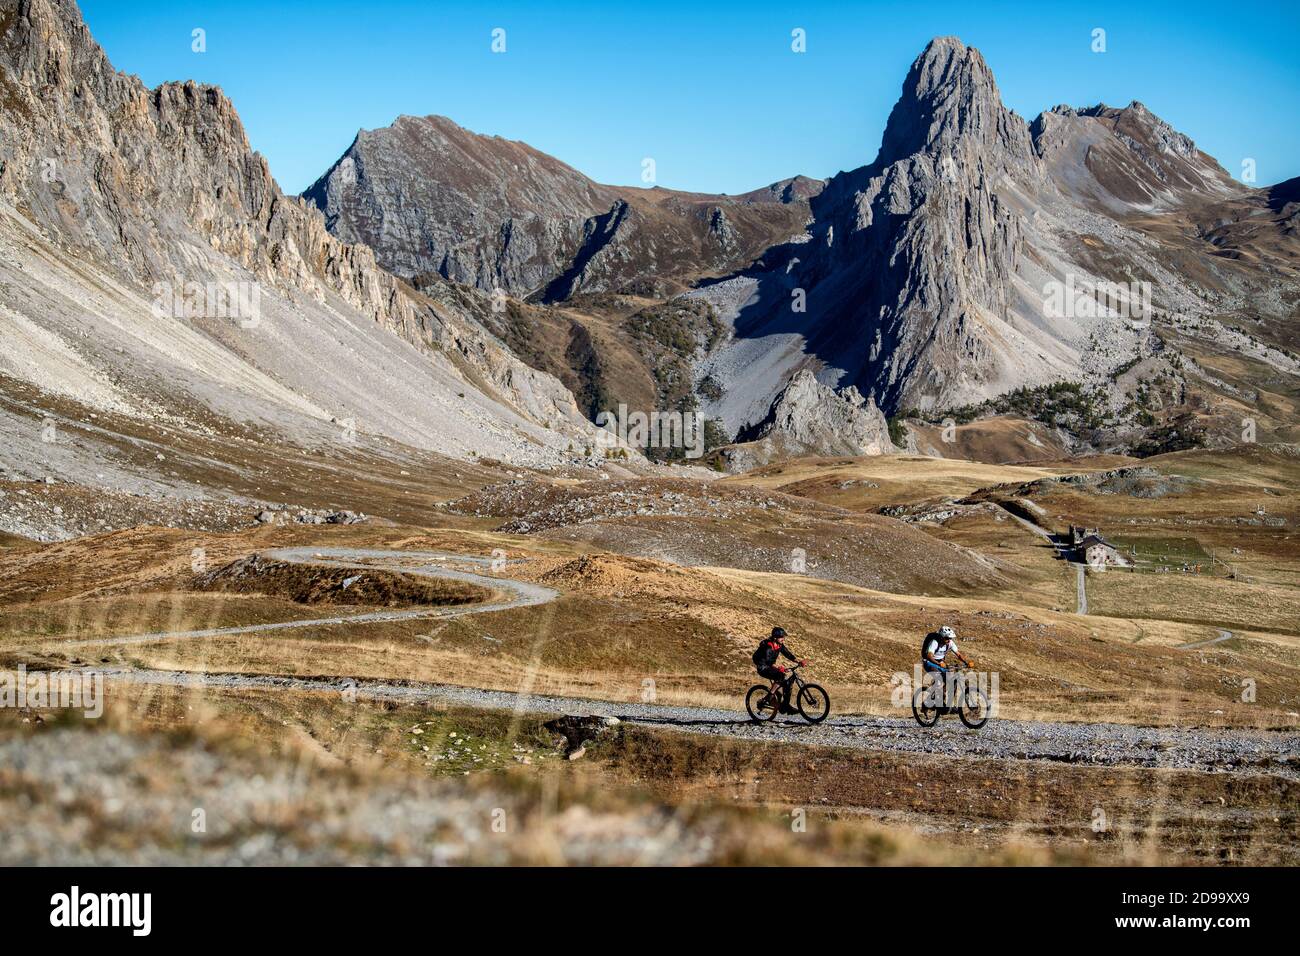 En automne, deux hommes se trouvent à vélo devant le refuge de Gardetta, à la frontière française de l'Italie, dans la vallée de Maira, dans les Alpes cottiennes. Banque D'Images